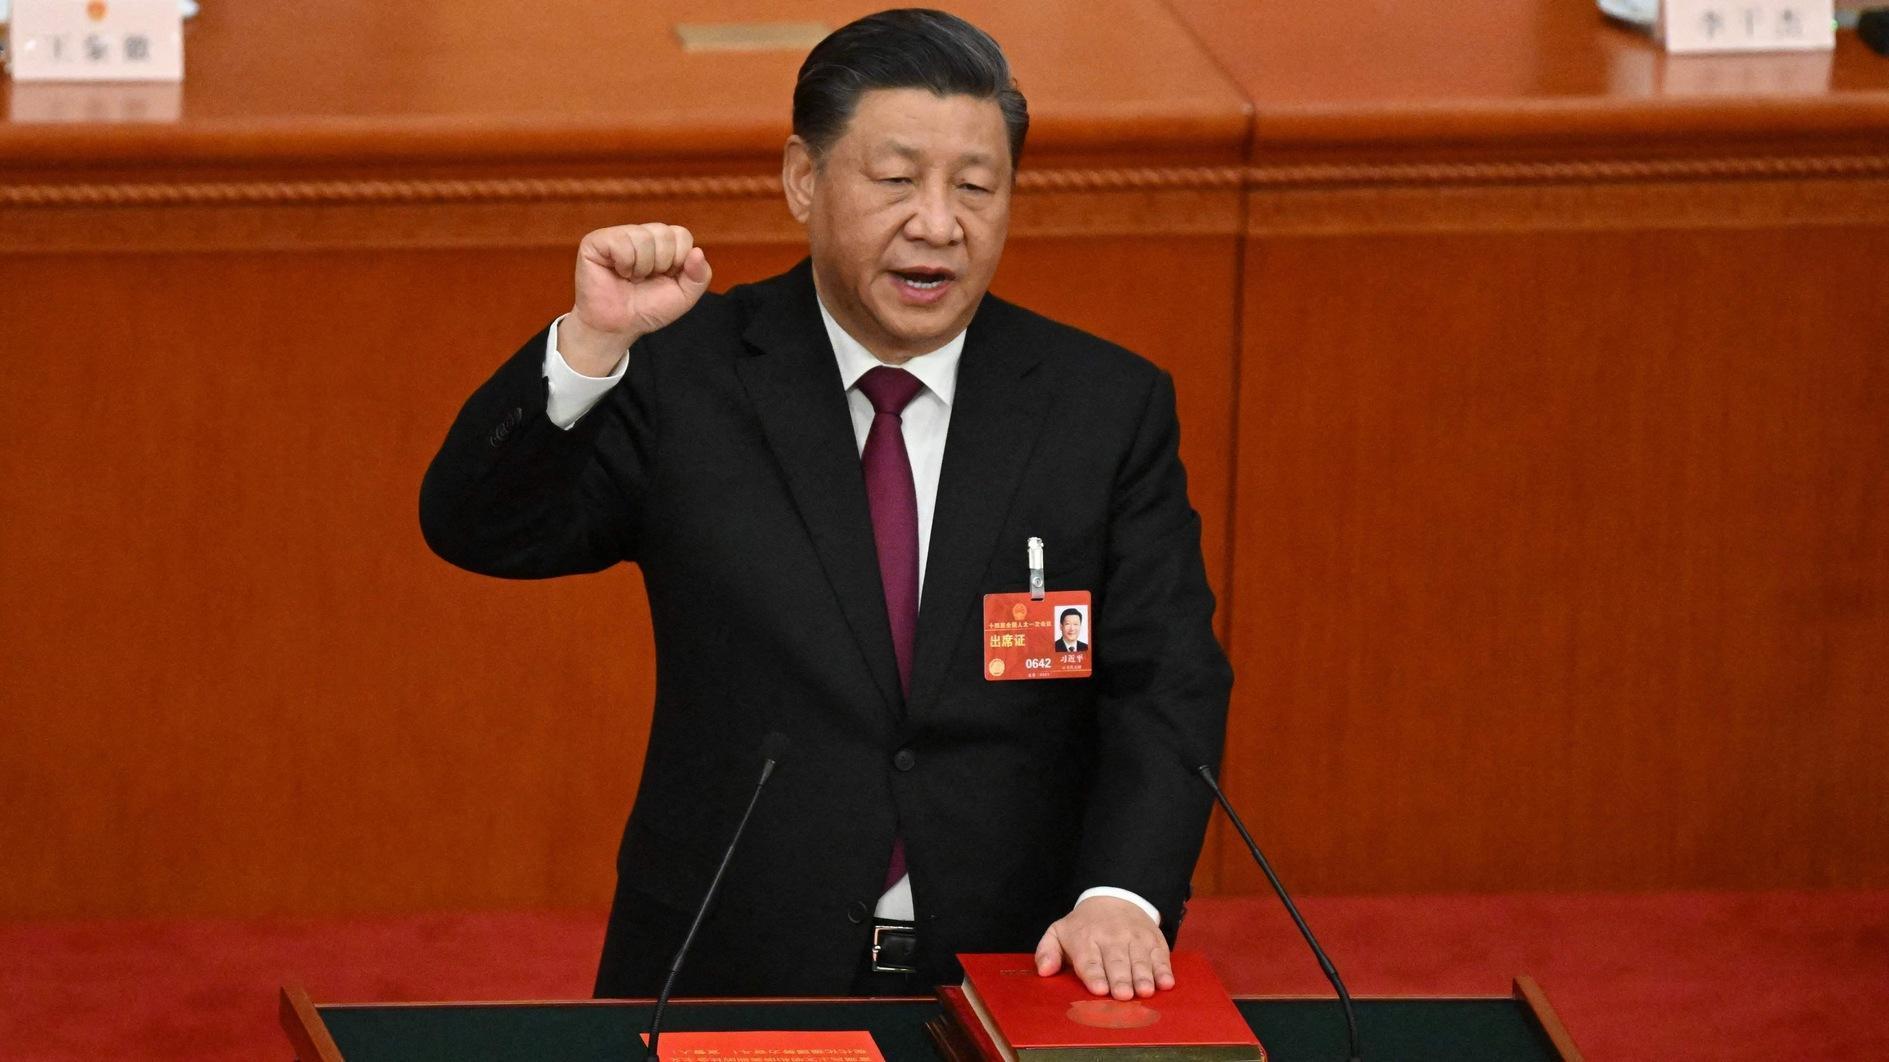 Xis-corruptiebestrijding richt zich op de financiële sector